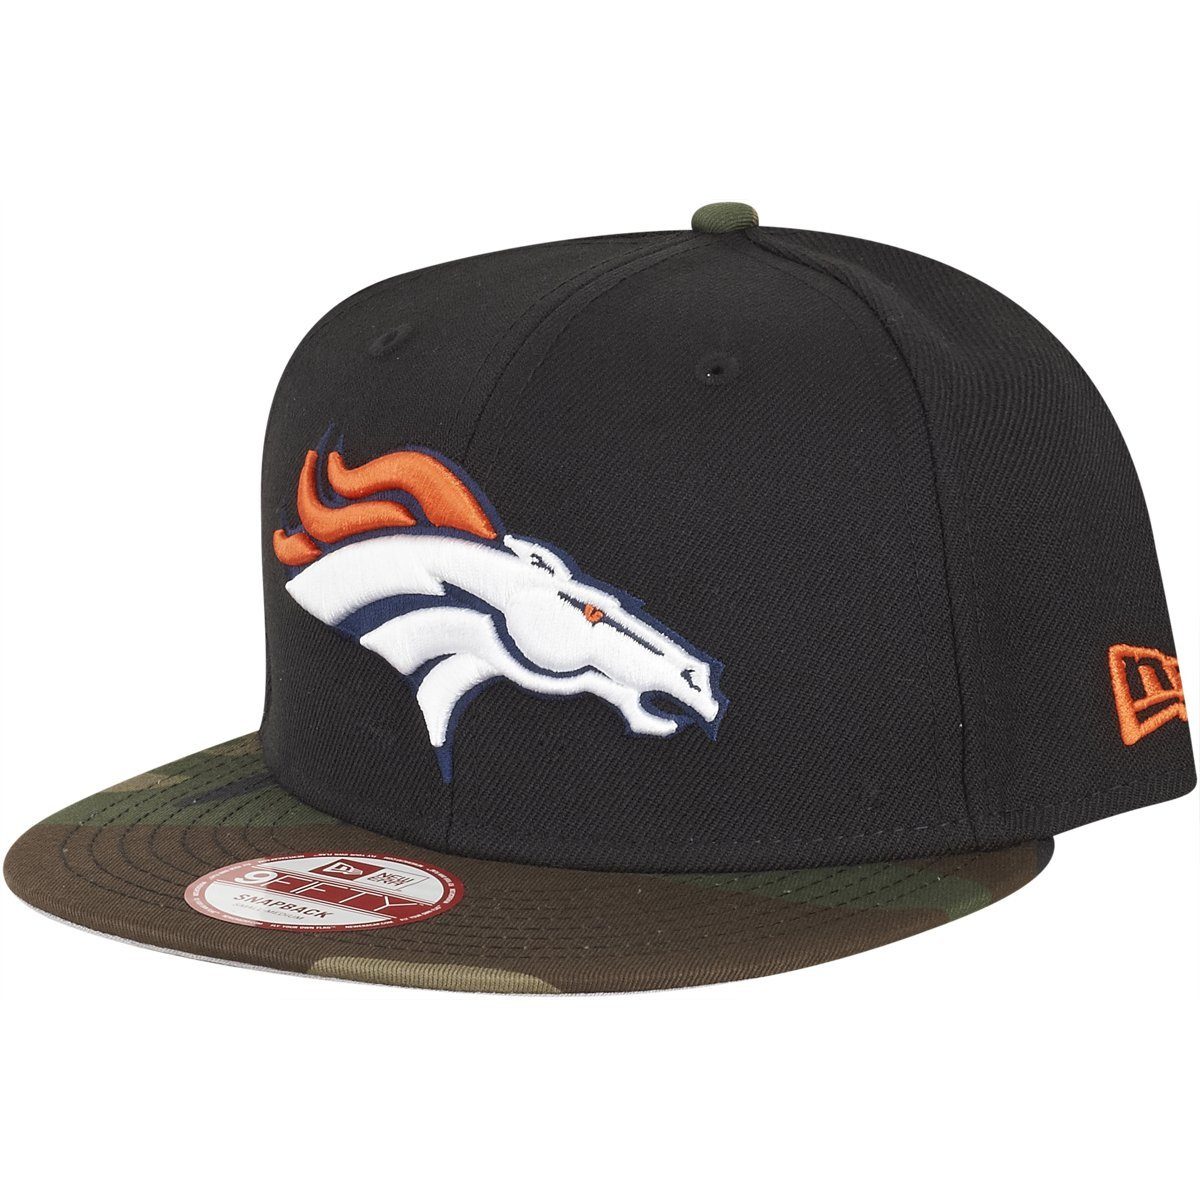 Denver New Snapback Era Cap 9Fifty Broncos